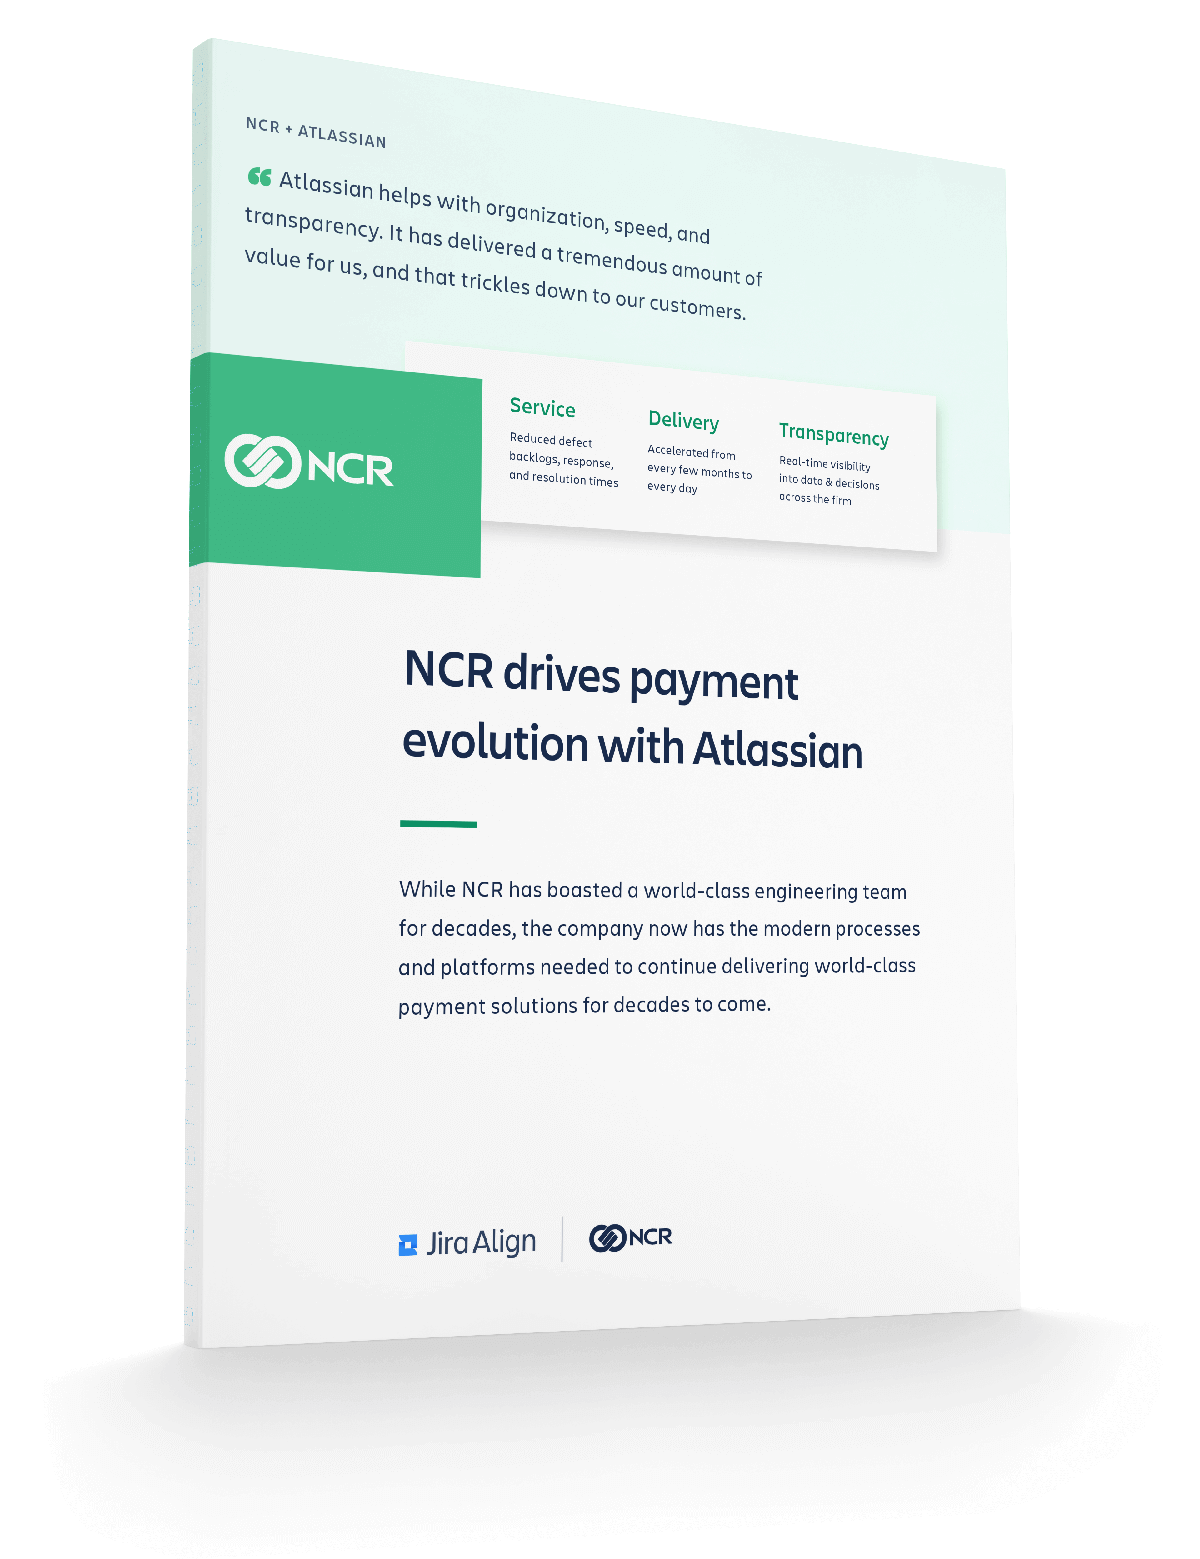 Aperçu du PDF « NCR favorise l'évolution des paiements grâce à des pratiques Agile évolutives et à un ensemble d'outils Atlassian intégré »